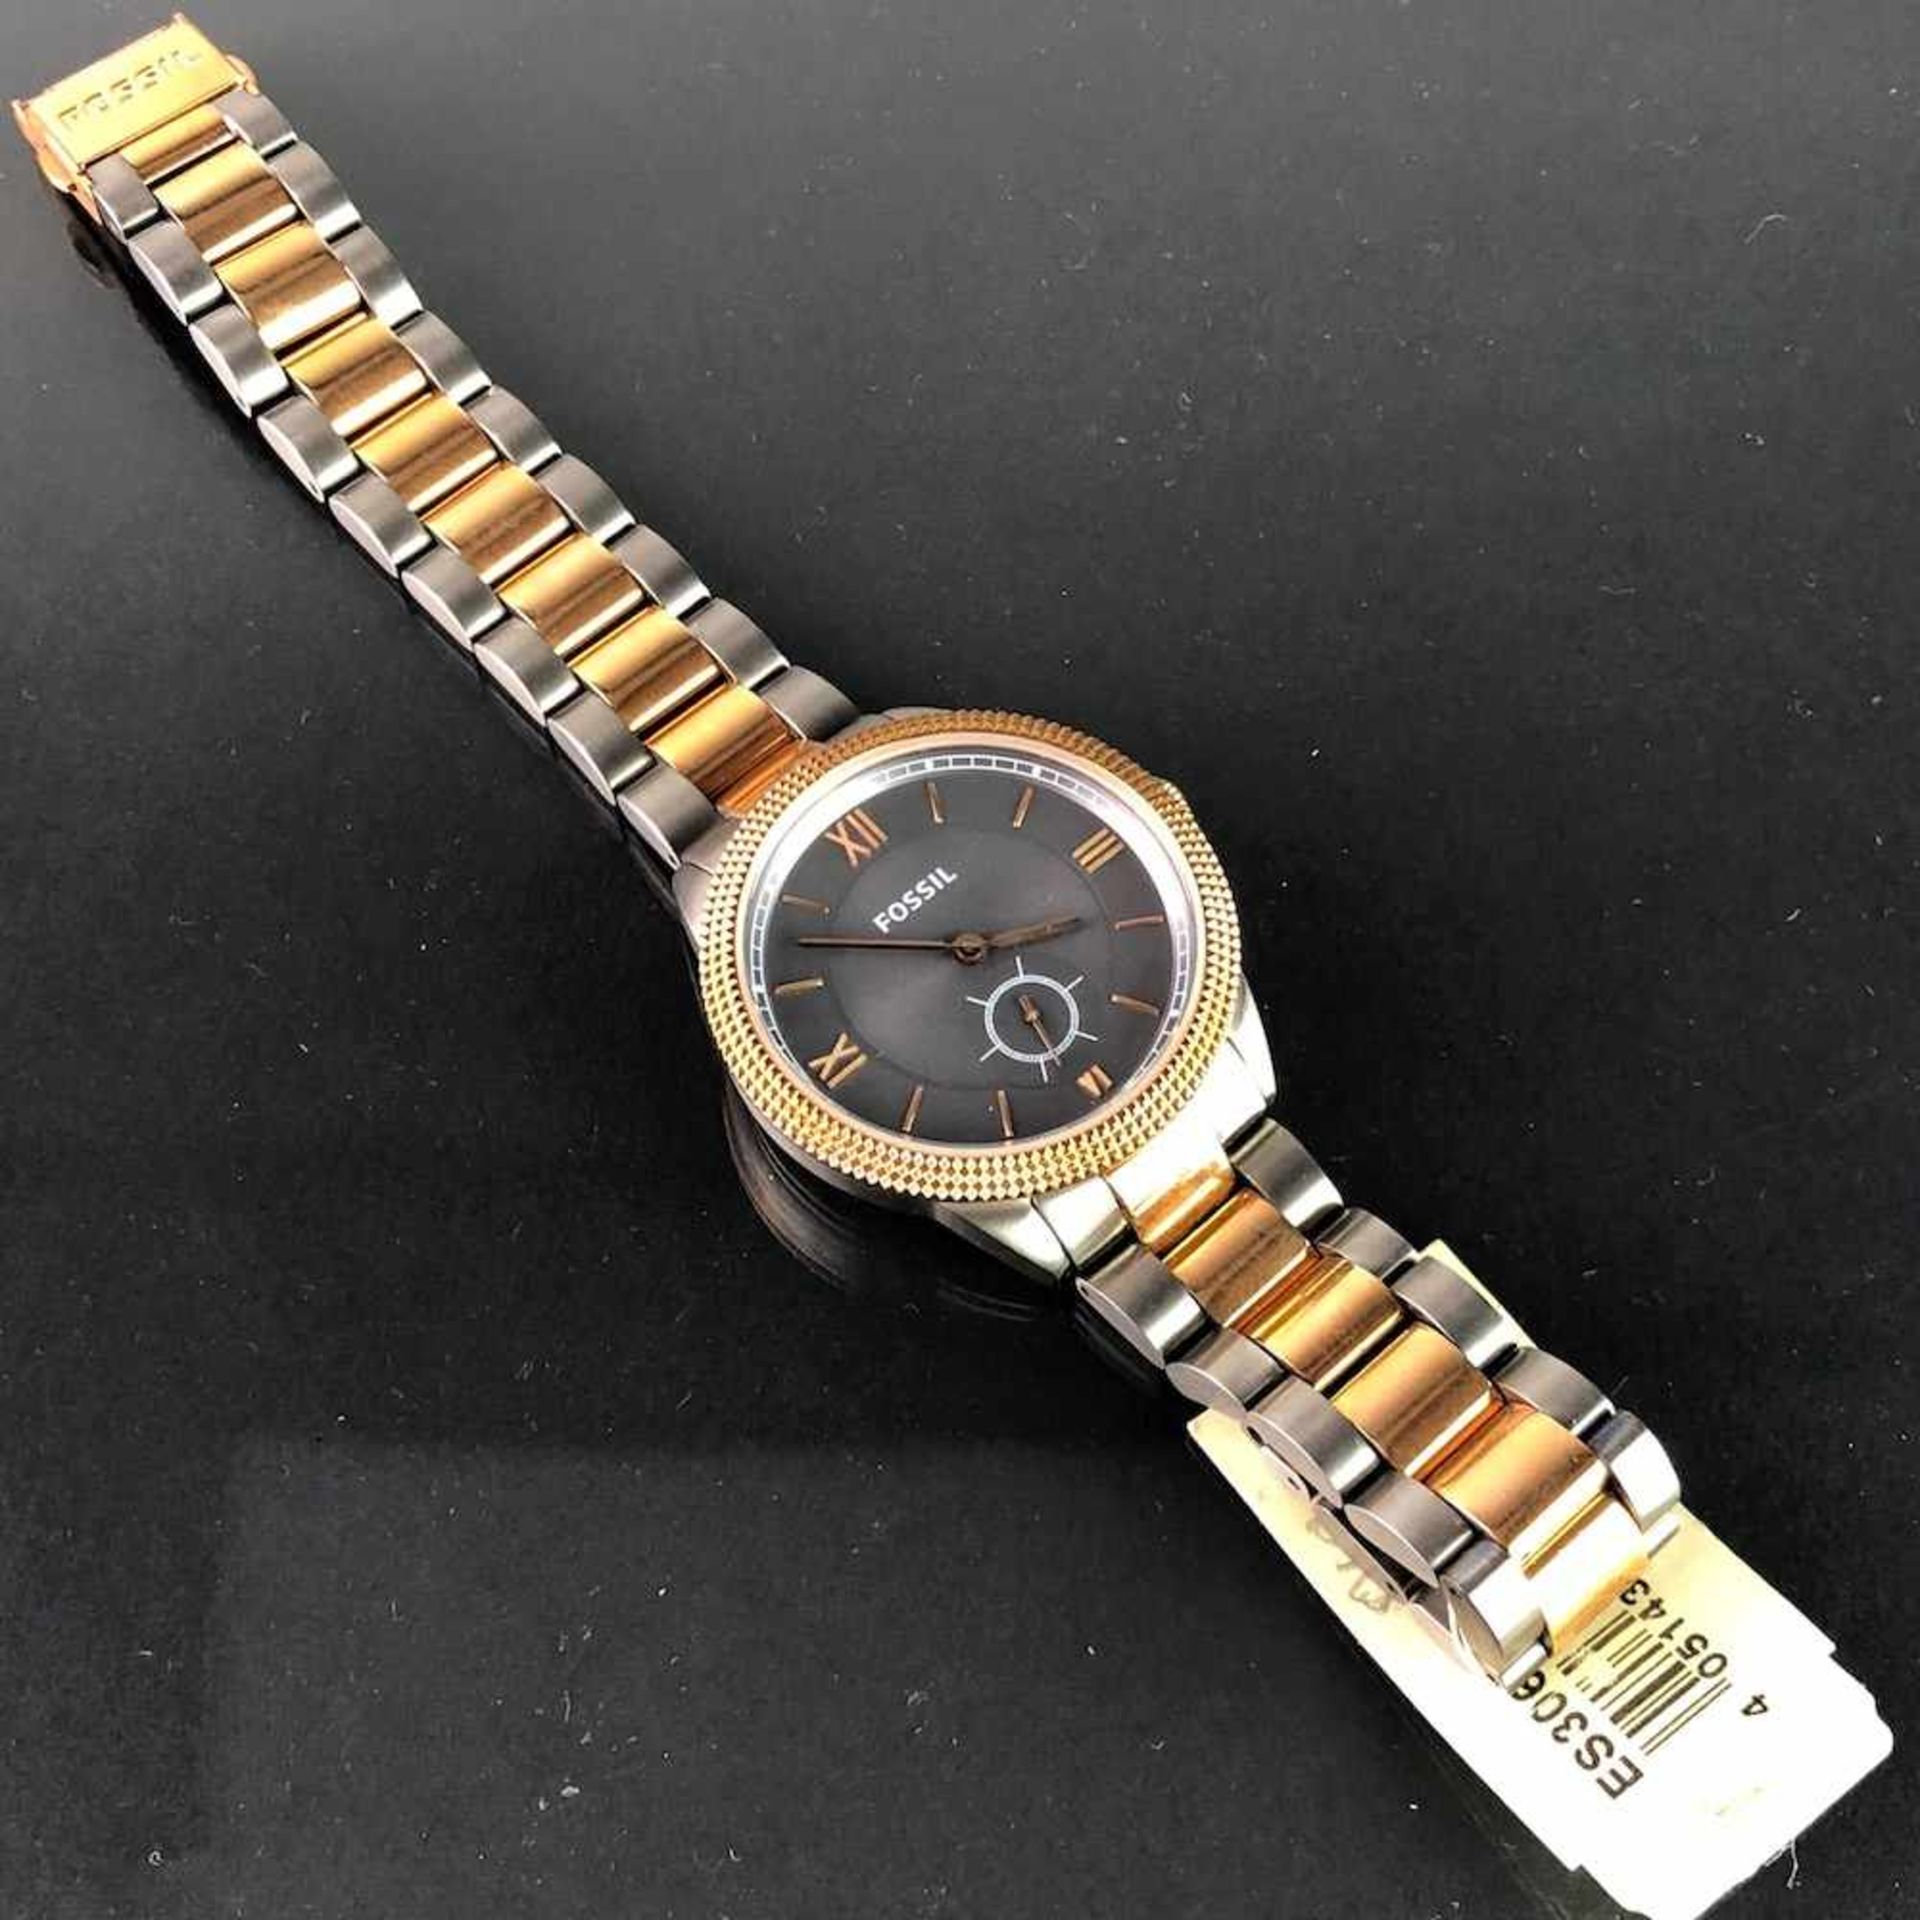 Armbanduhr: "FOSSIL". Edelstahl gebürstet und bicolor. Mineralglas. Ungetragen aus Uhrmachernachlaß. - Bild 2 aus 2